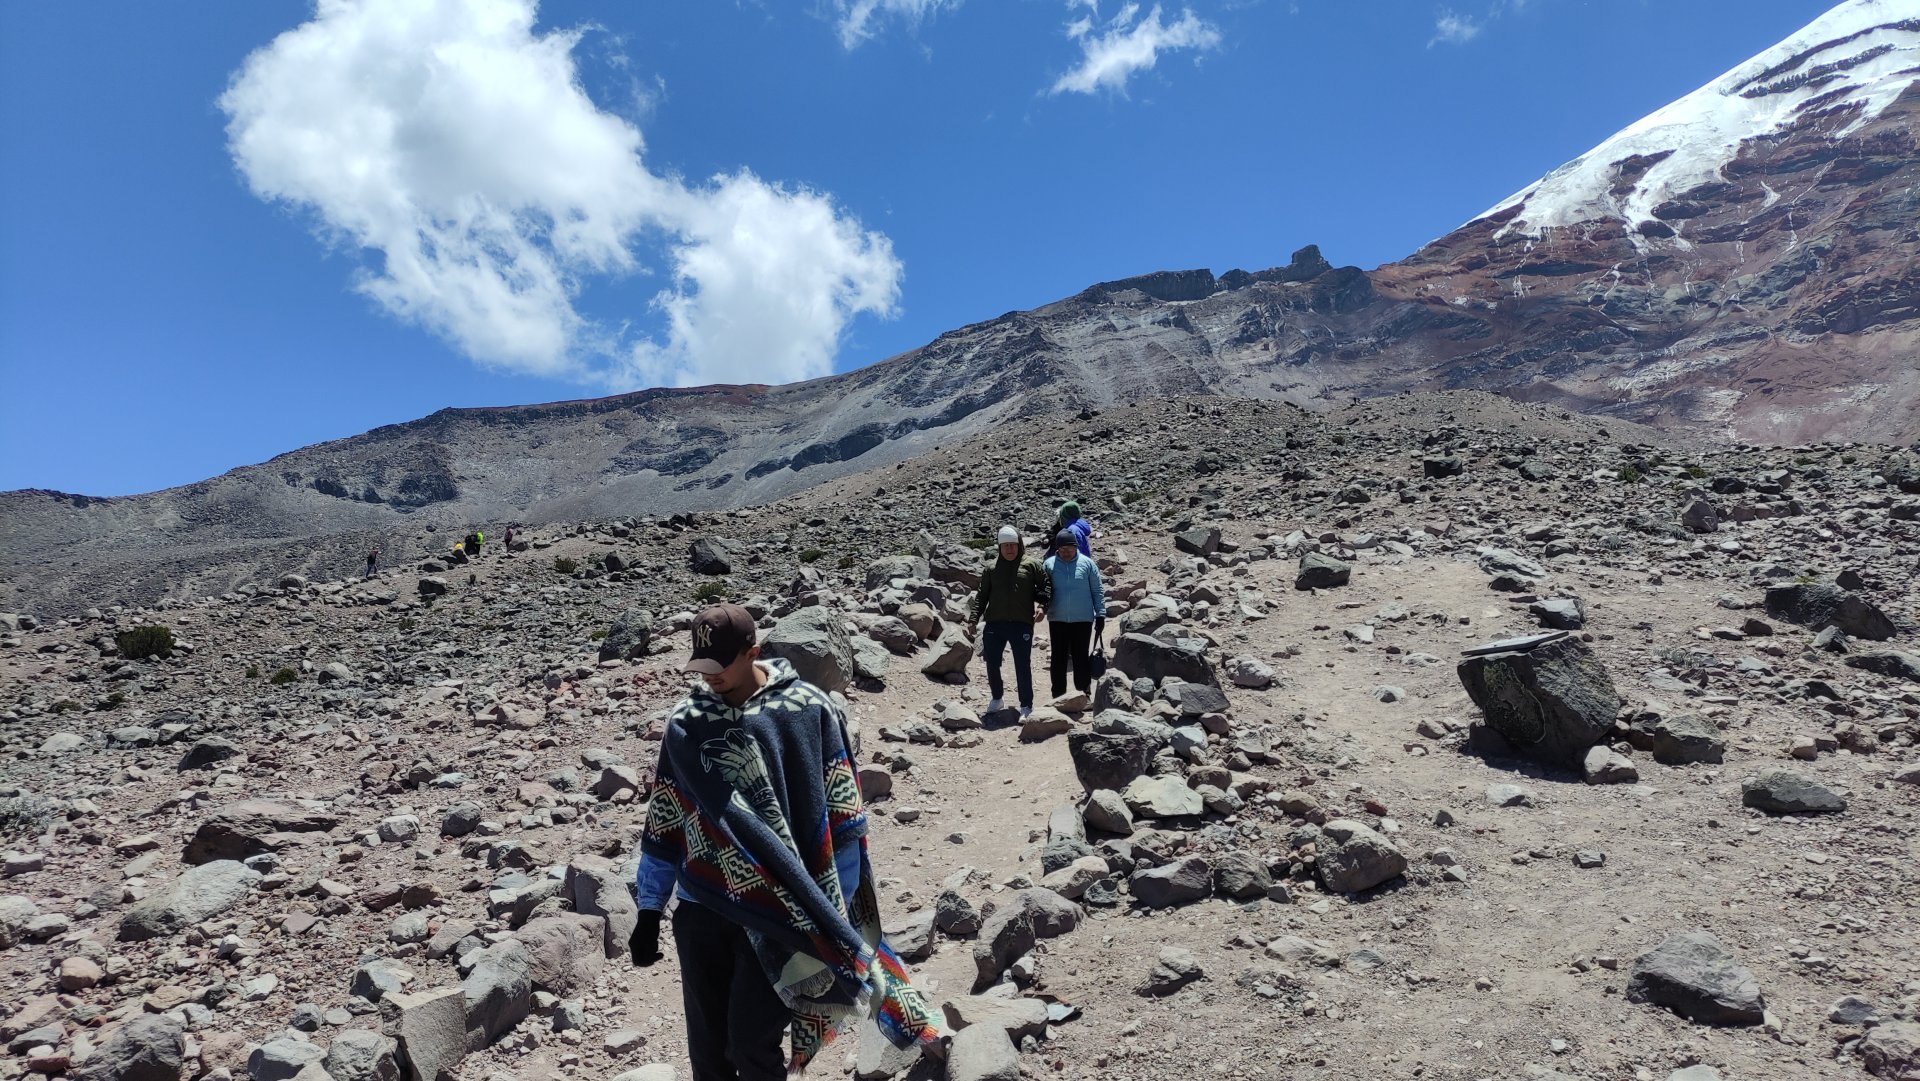 El volcán Chimborazo es apto para diferentes actividades, ateles como el senderismo, montañismo y más.